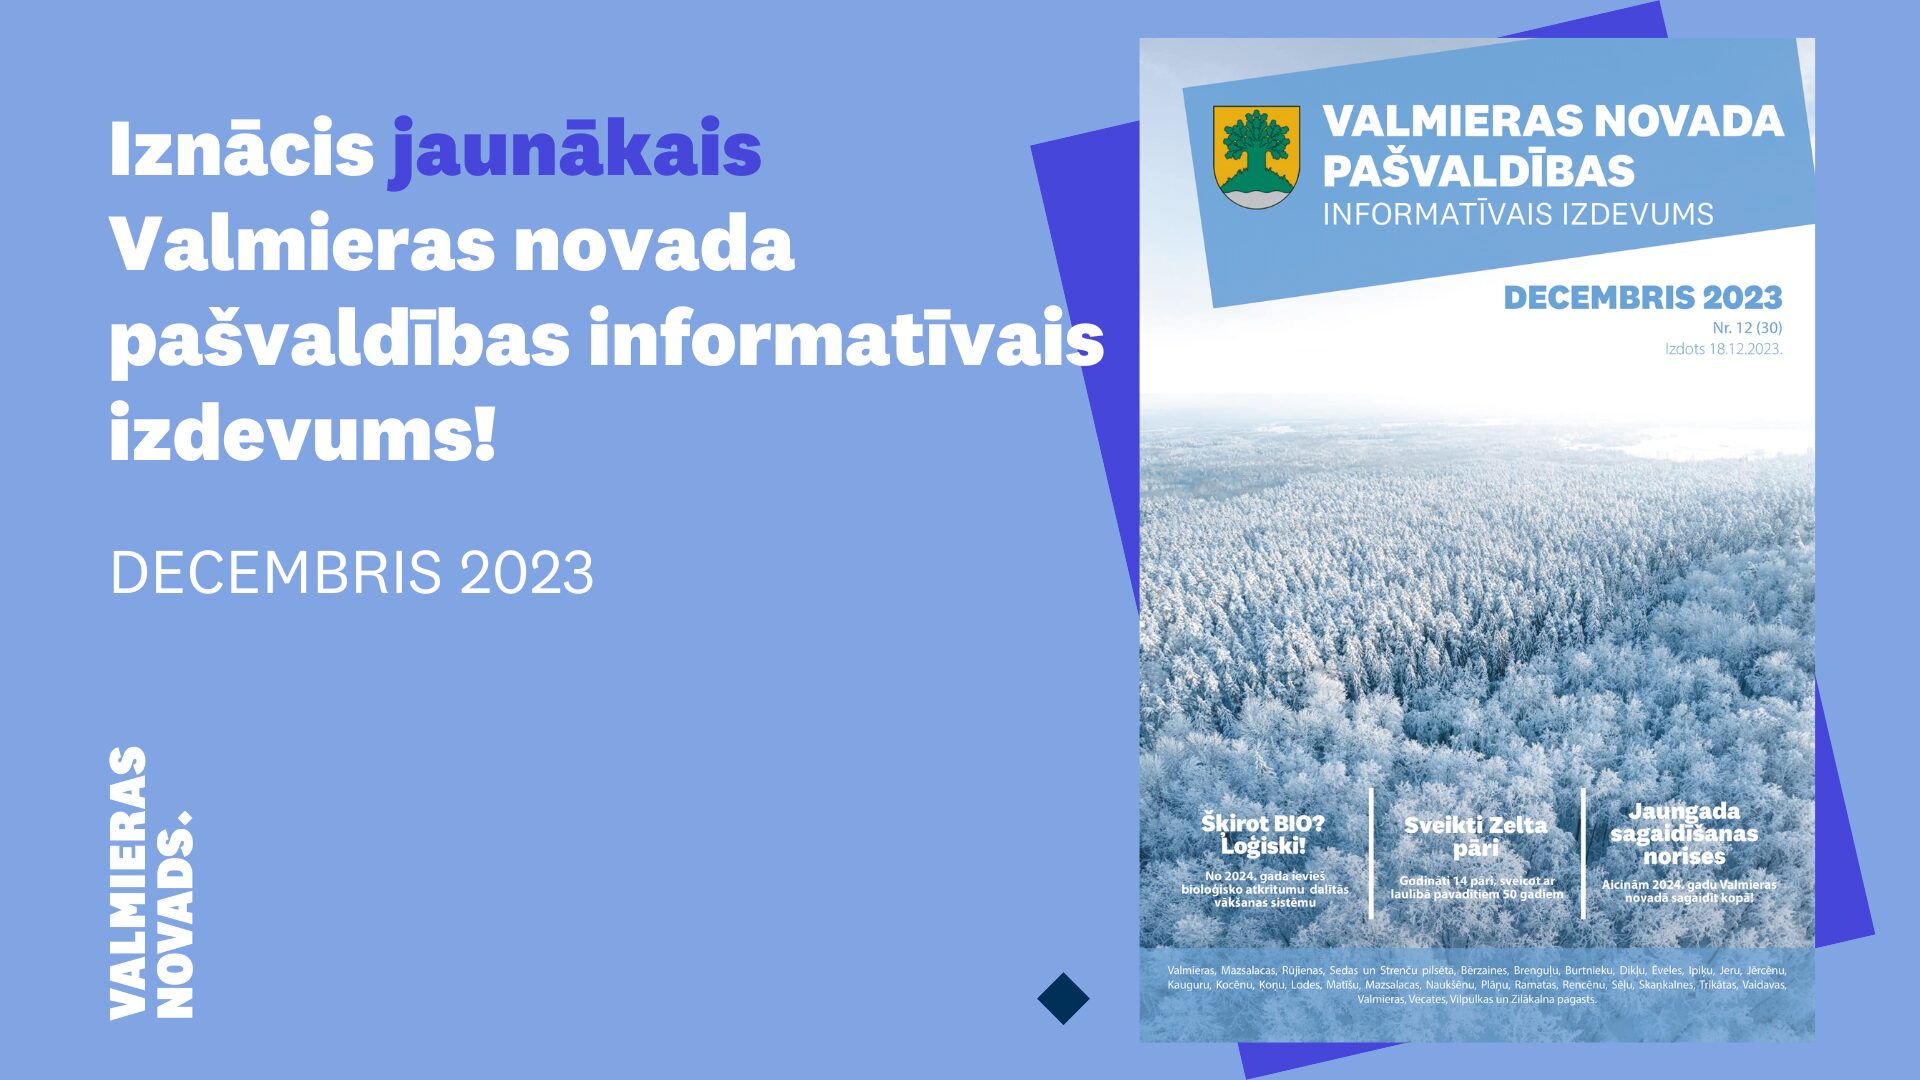 Valmieras novada pašvaldības informatīvais izdevums decembris 2023